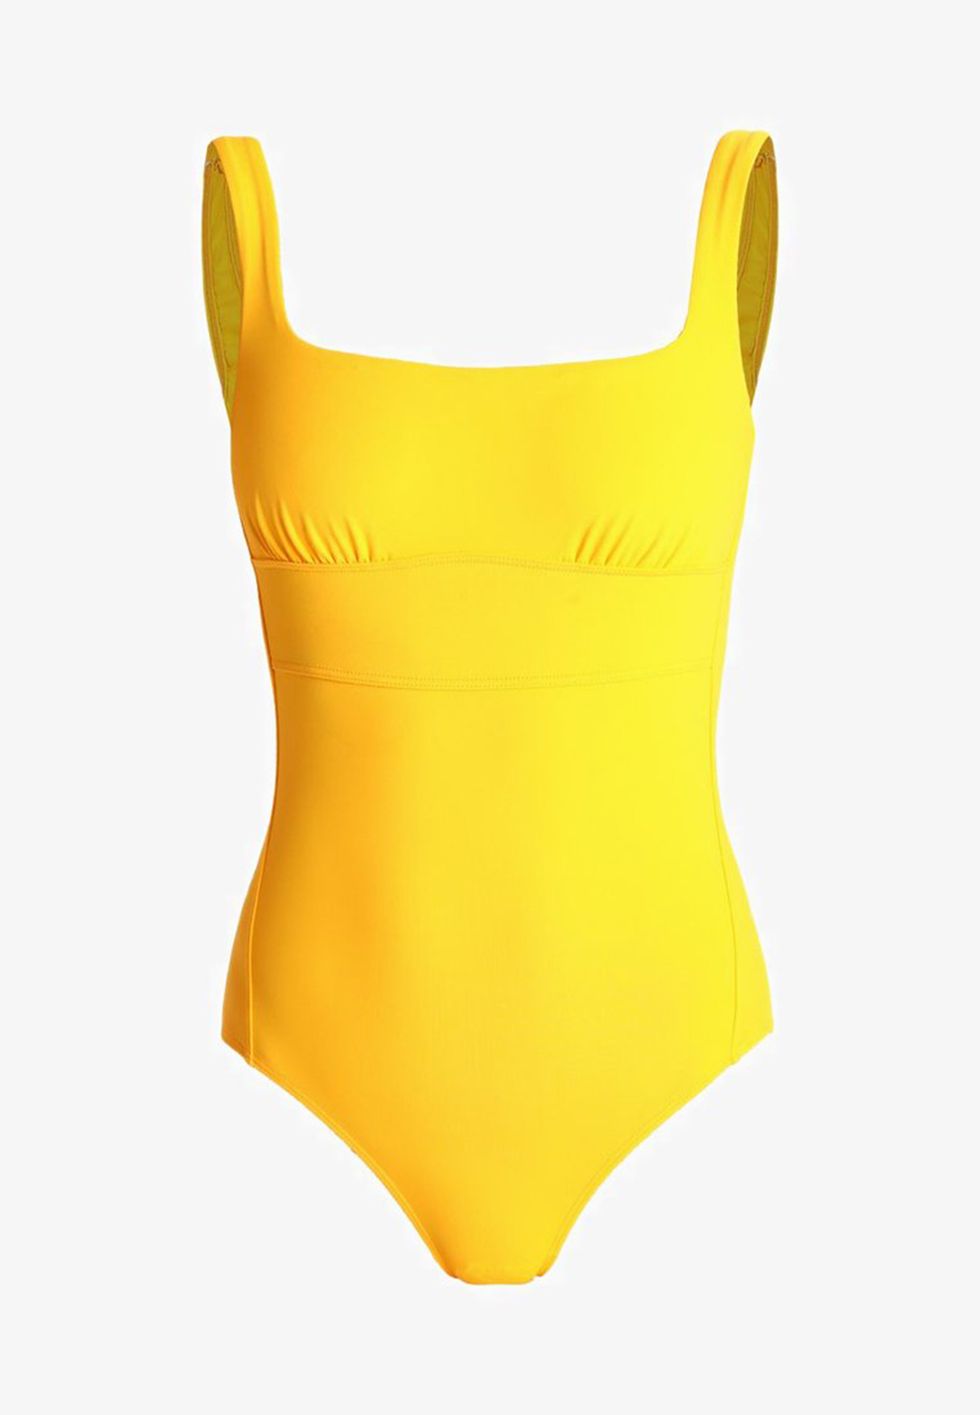 Clothing, One-piece swimsuit, Swimwear, Yellow, Monokini, Orange, Maillot, Swimsuit bottom, Swim brief, Bikini, 